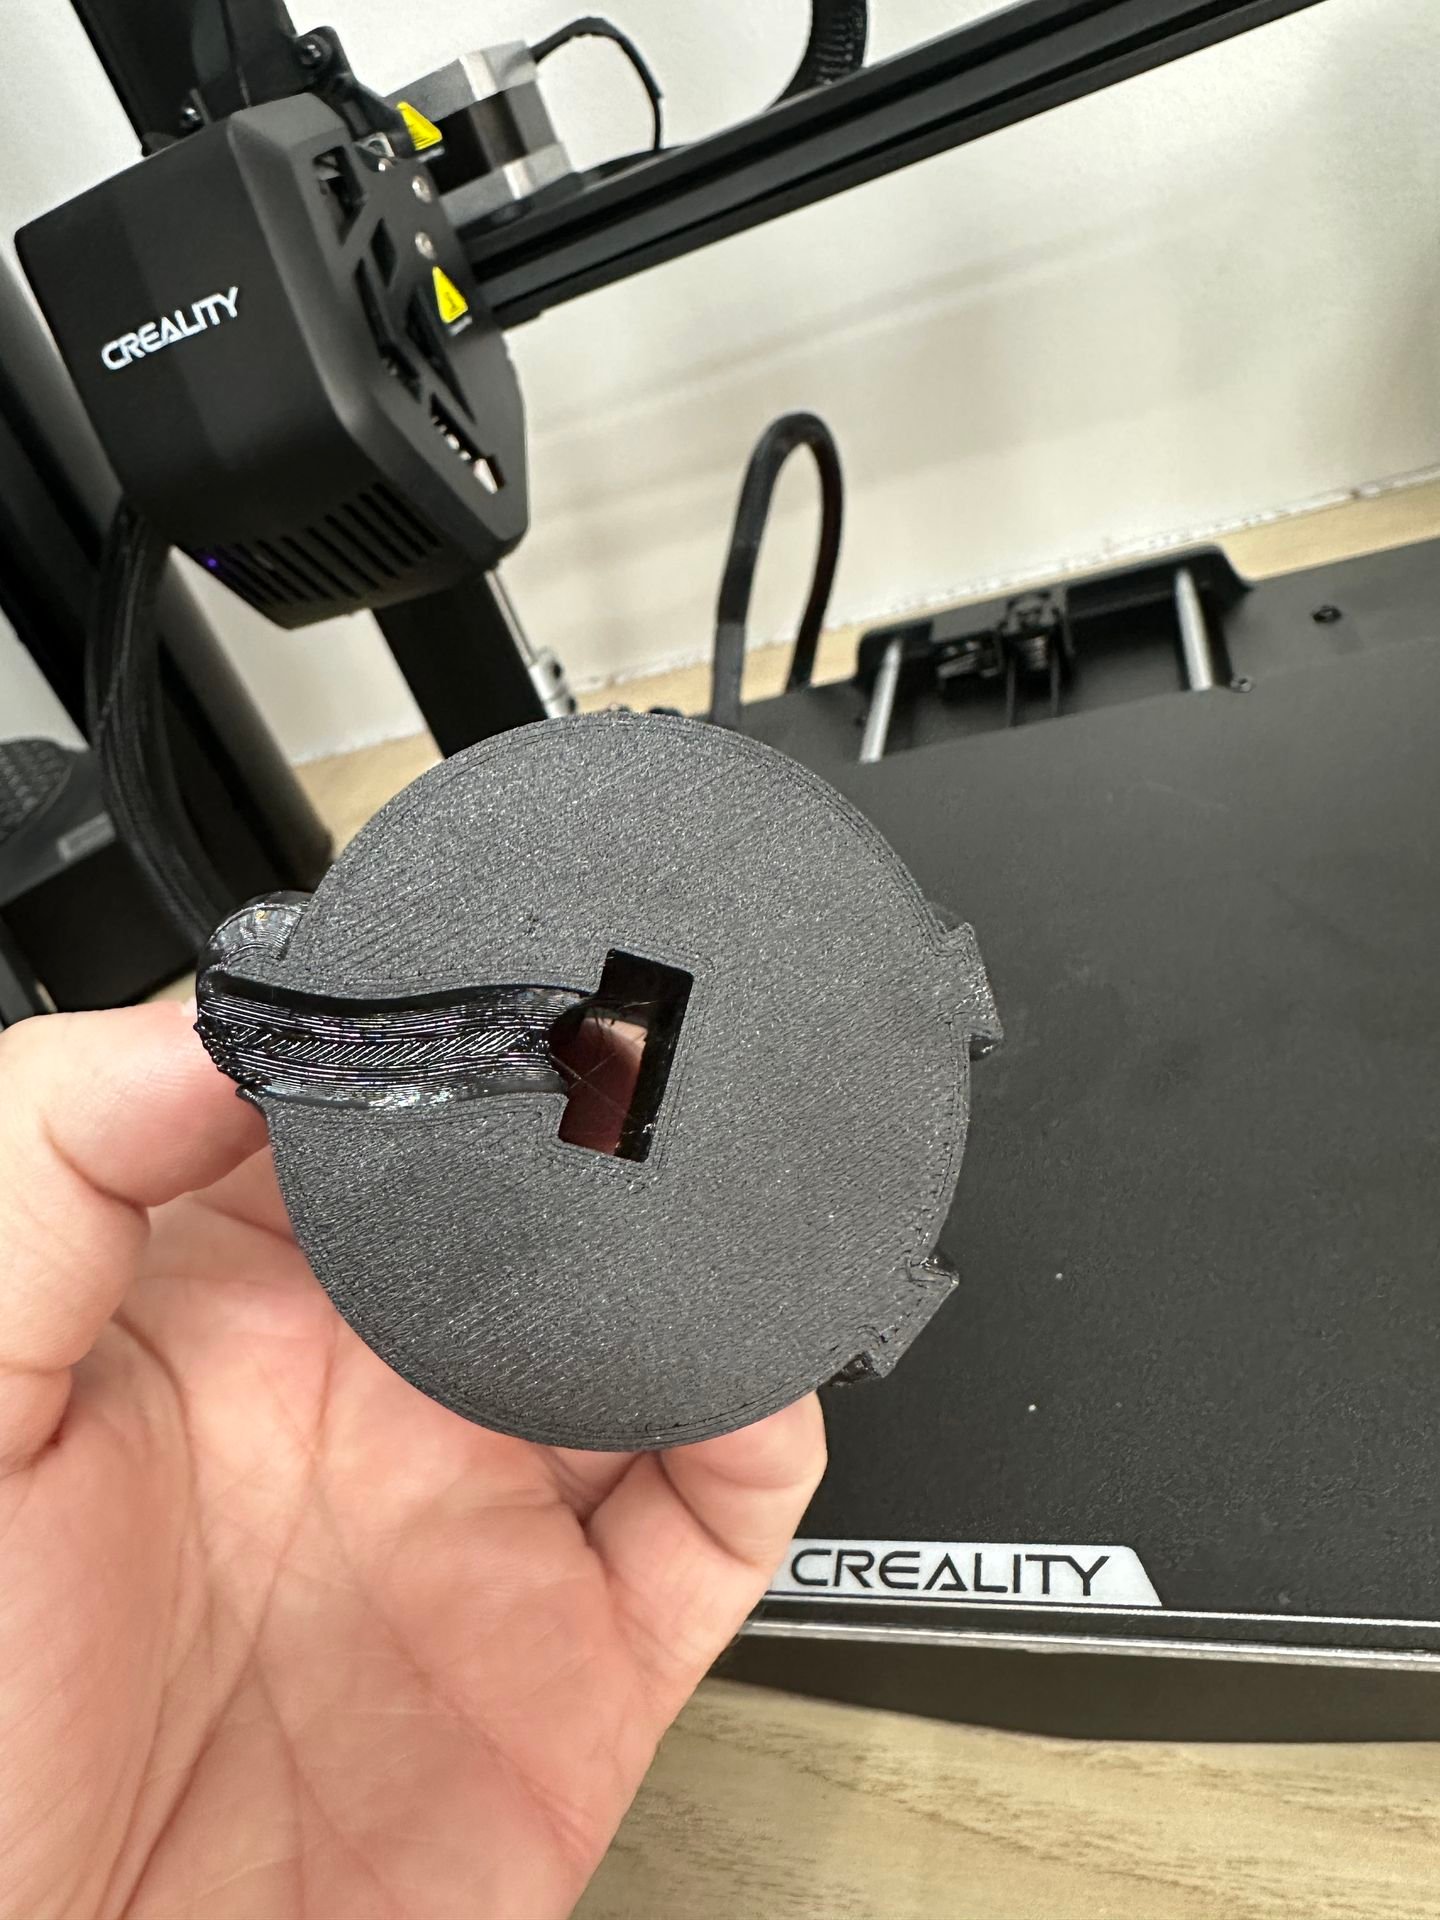 CREALITY] ENDER-3 V3 SE - Une imprimante 3D à 169€ idéale pour se lancer  dans l'impression 3D 